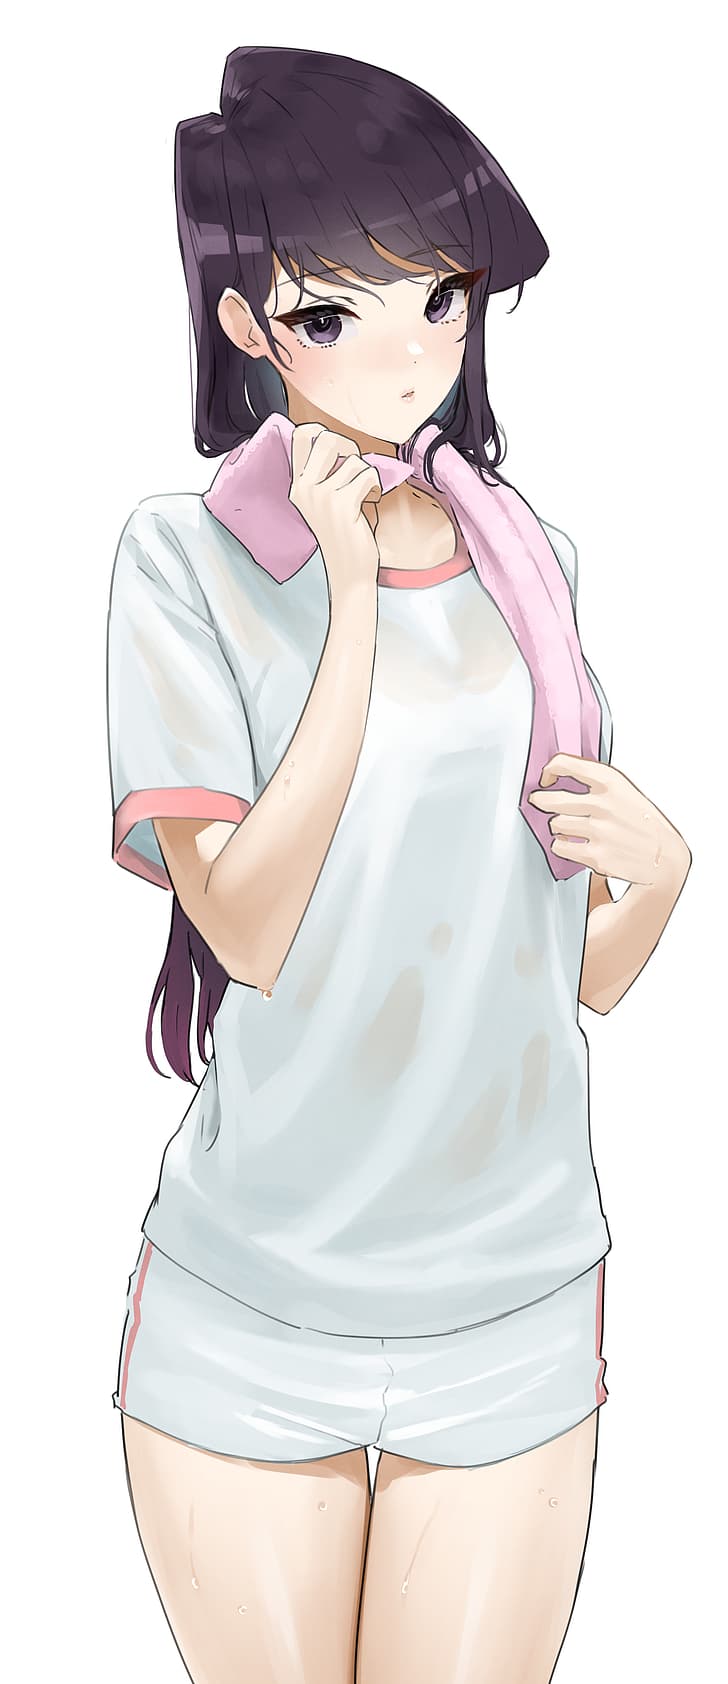 Komi-san wa, Comyushou desu., blushing, white clothing, rubbing with towel